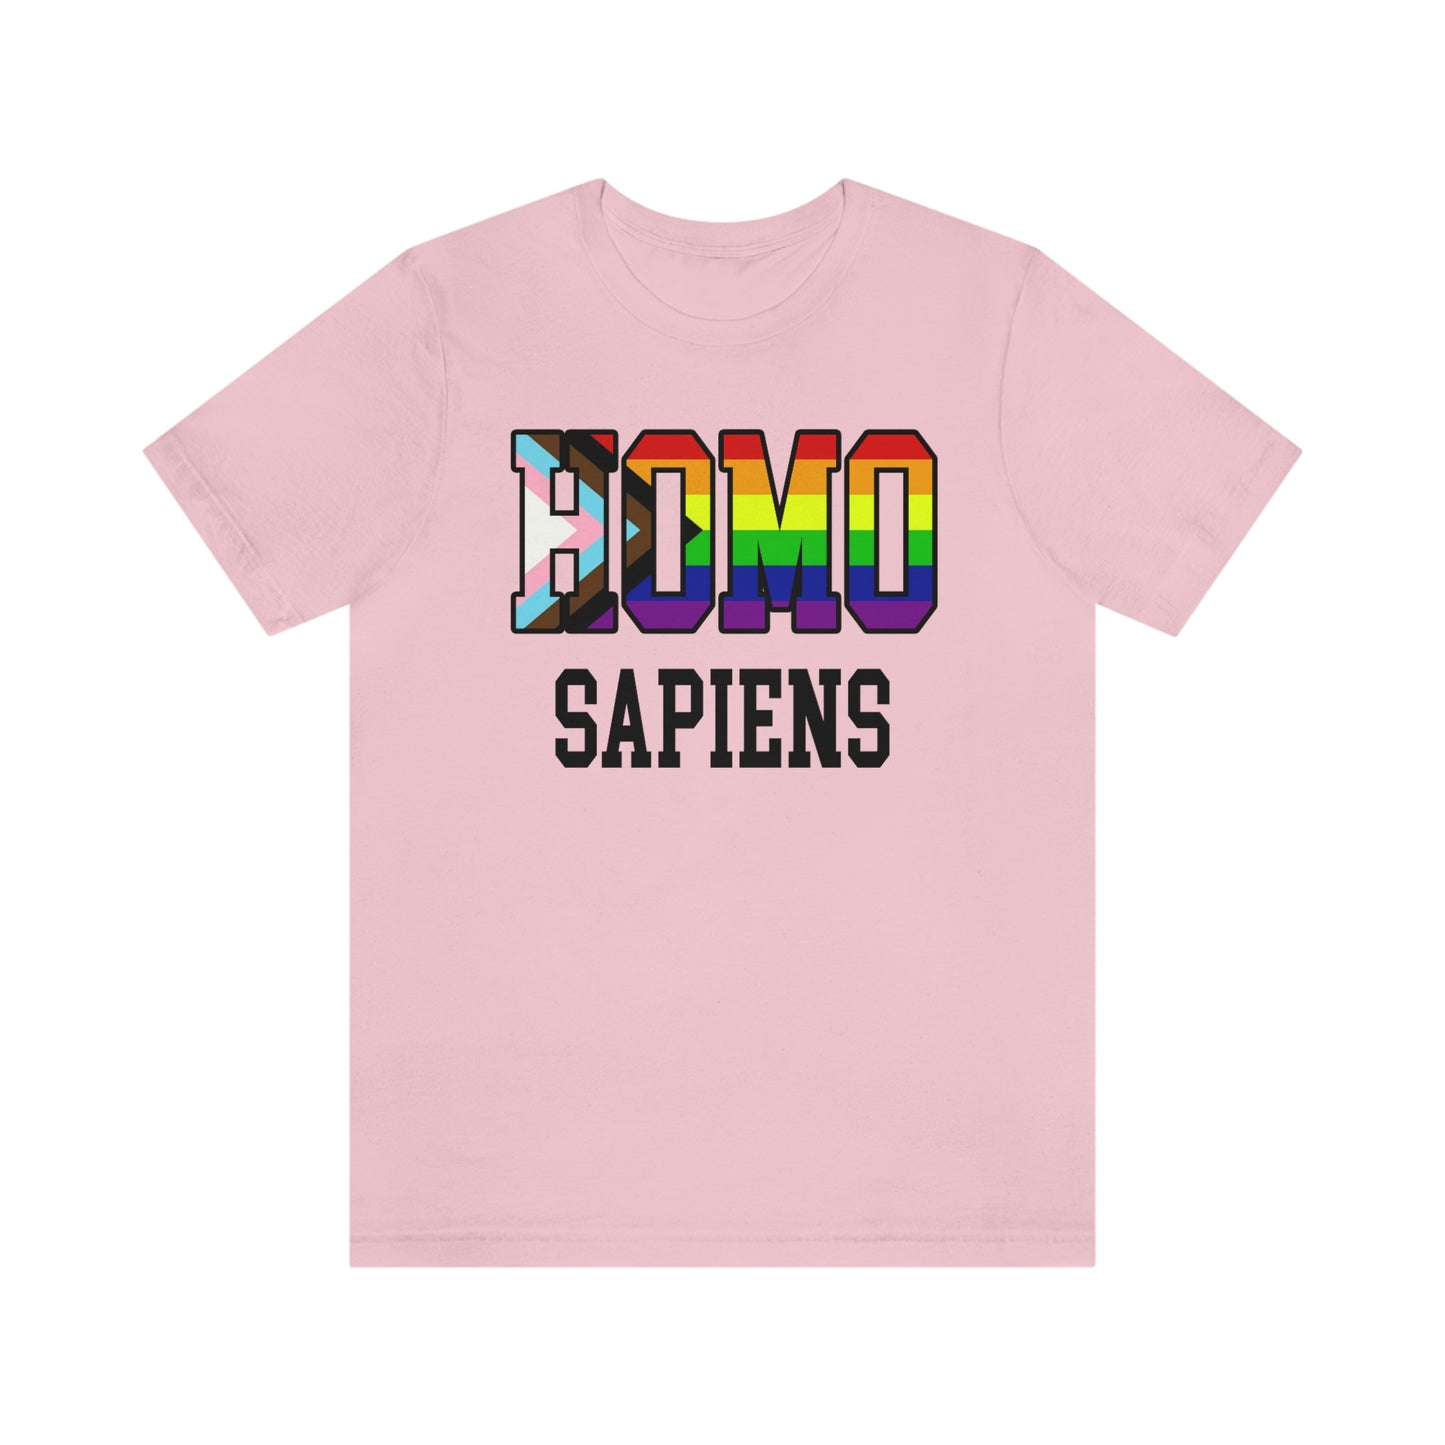 Camiseta unisex para adultos HOMO SAPIENS